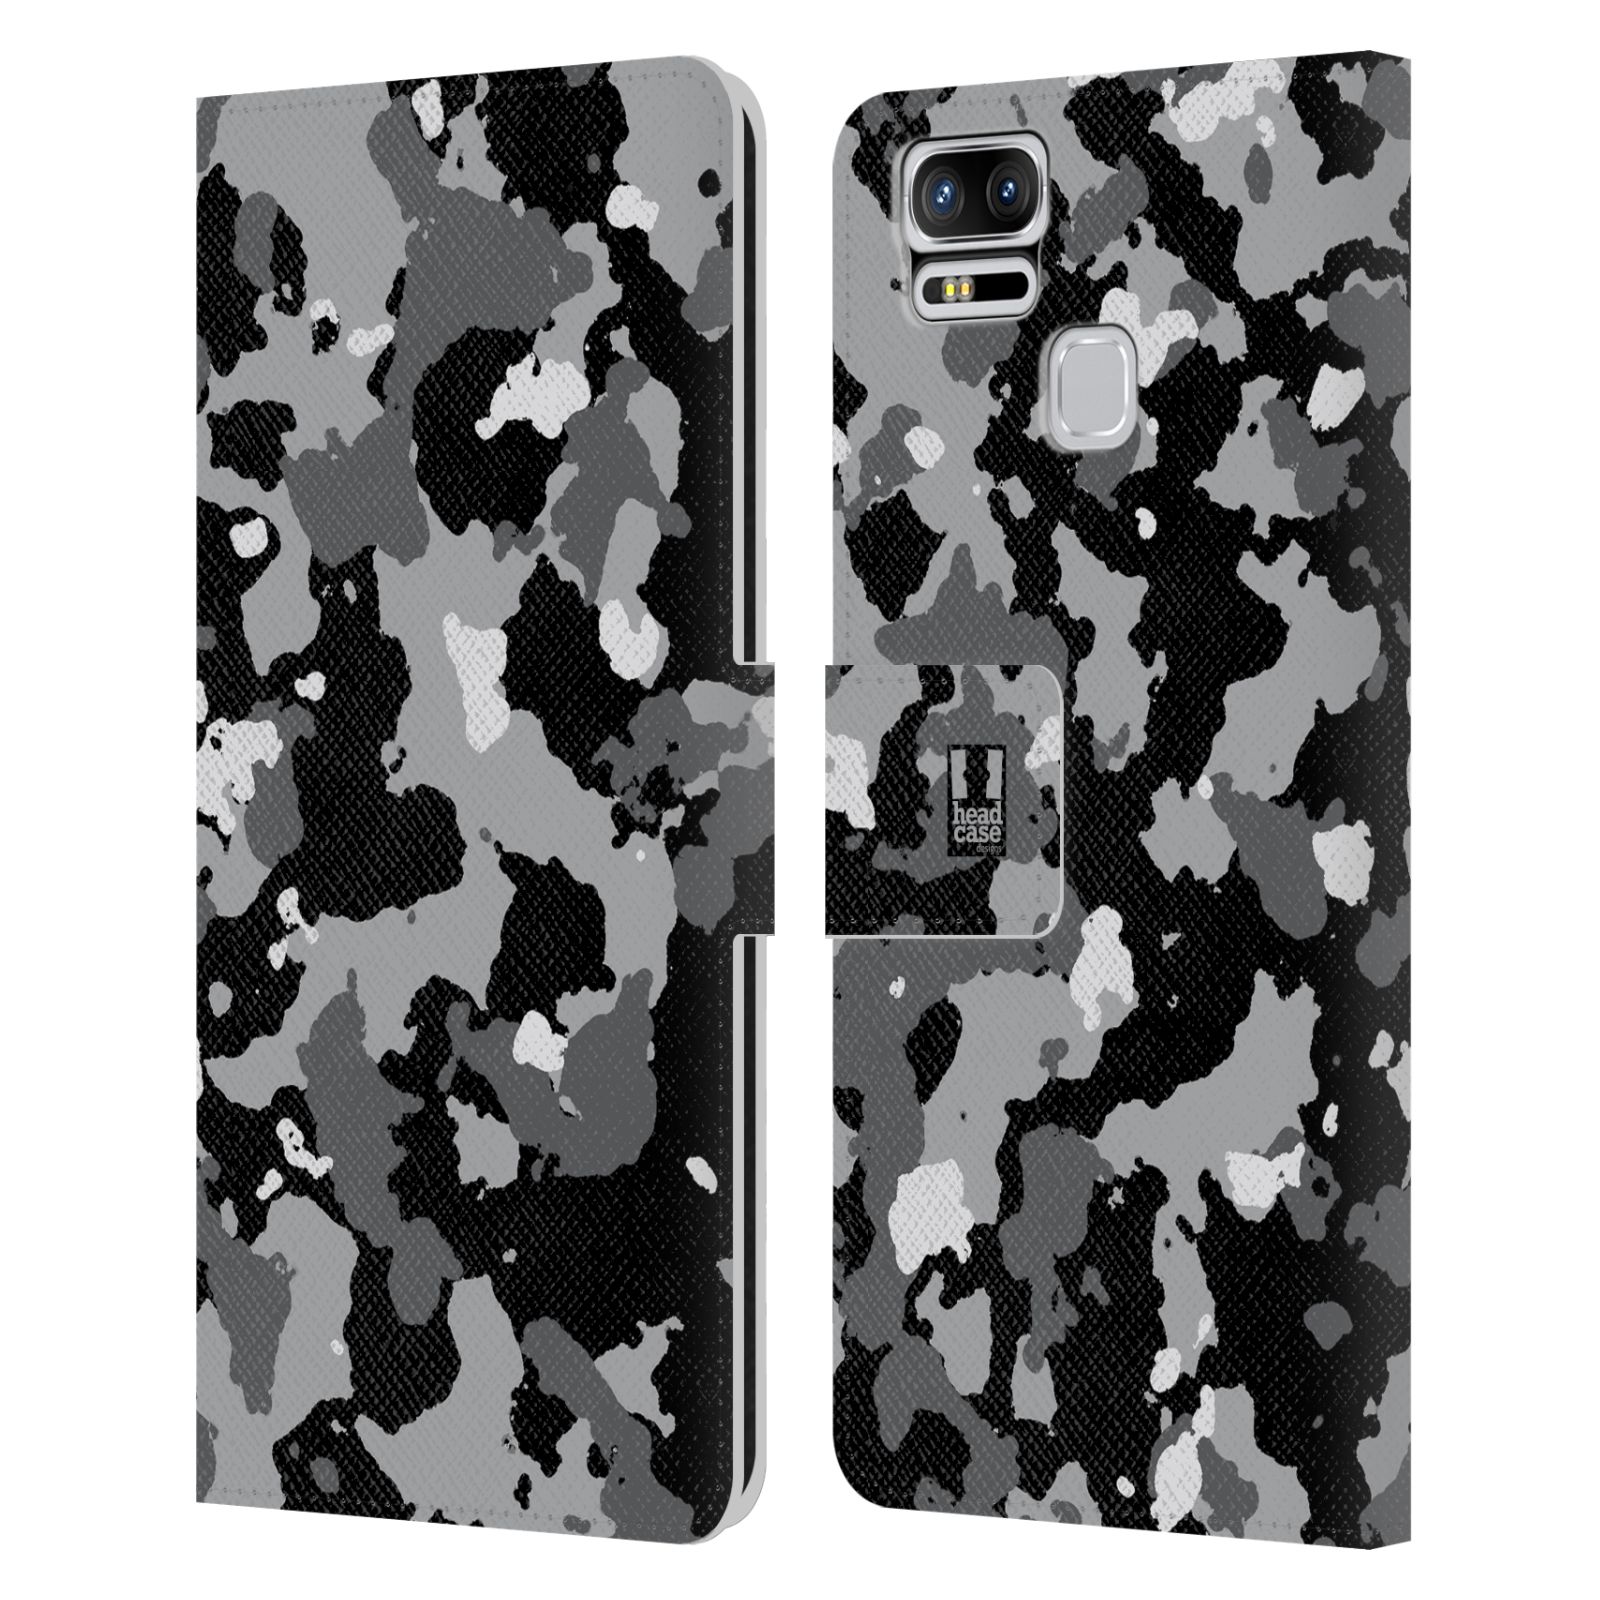 Pouzdro na mobil Asus Zenfone 3 Zoom ZE553KL - Head Case - kamuflaž černá a šedá